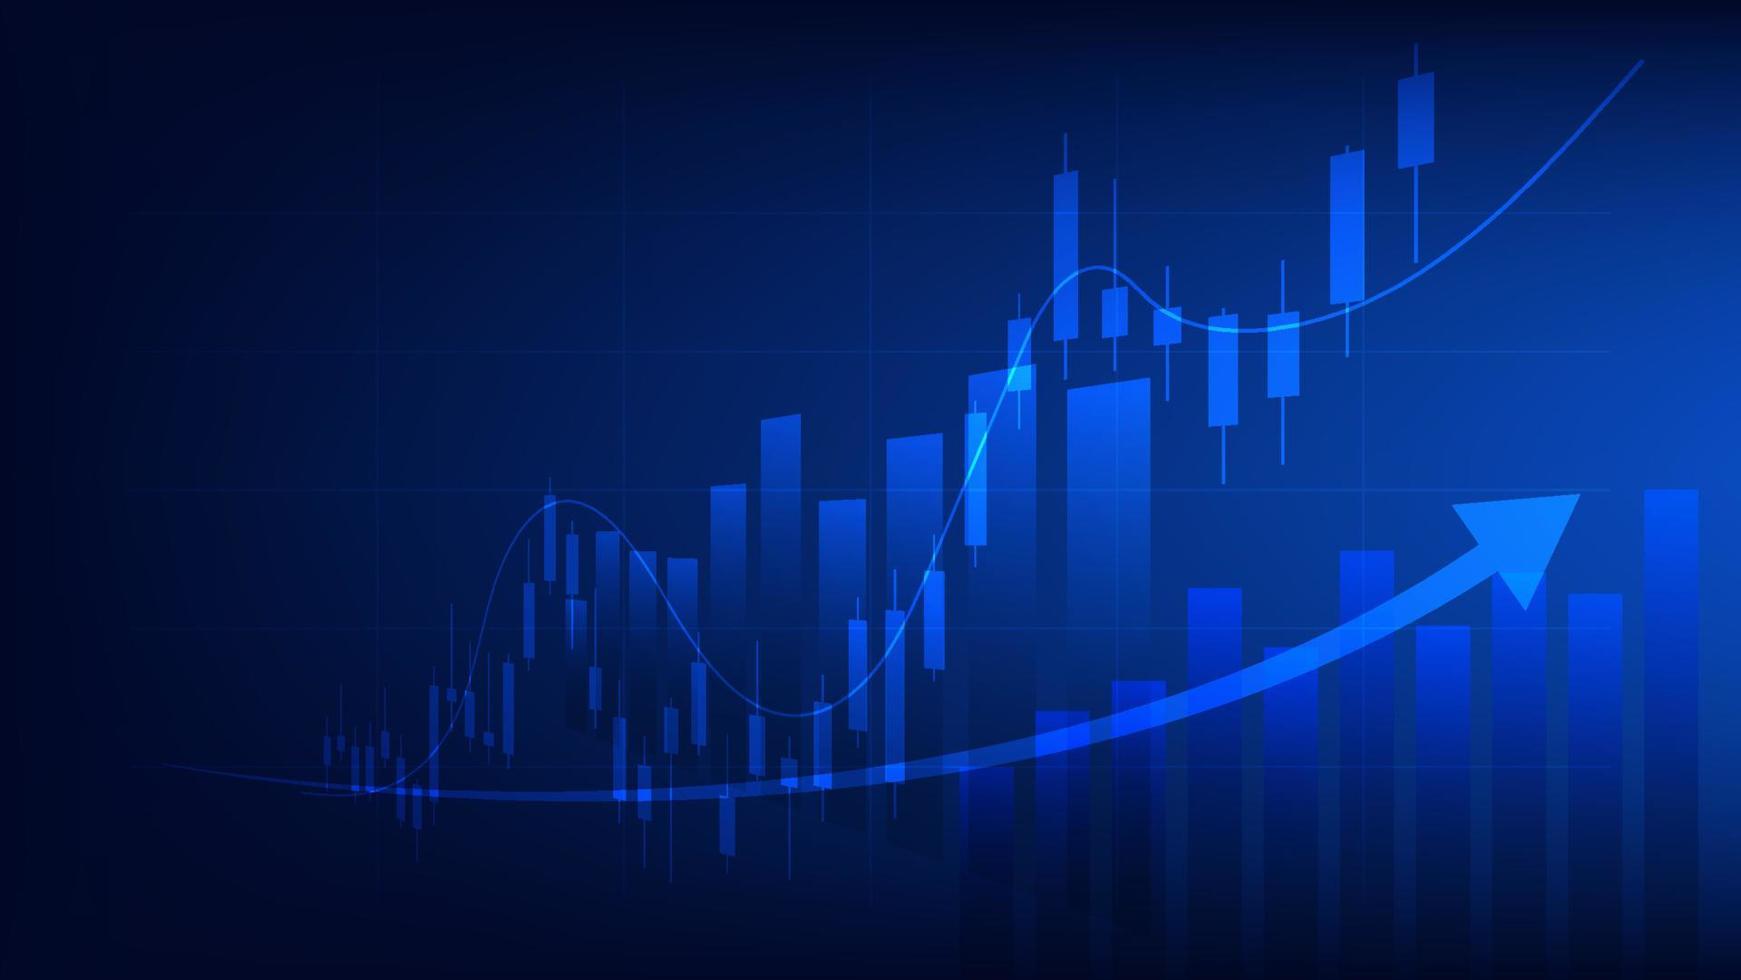 estatísticas de negócios financeiros com gráfico de barras e gráfico de velas mostram o preço do mercado de ações e ganhos efetivos em fundo azul vetor